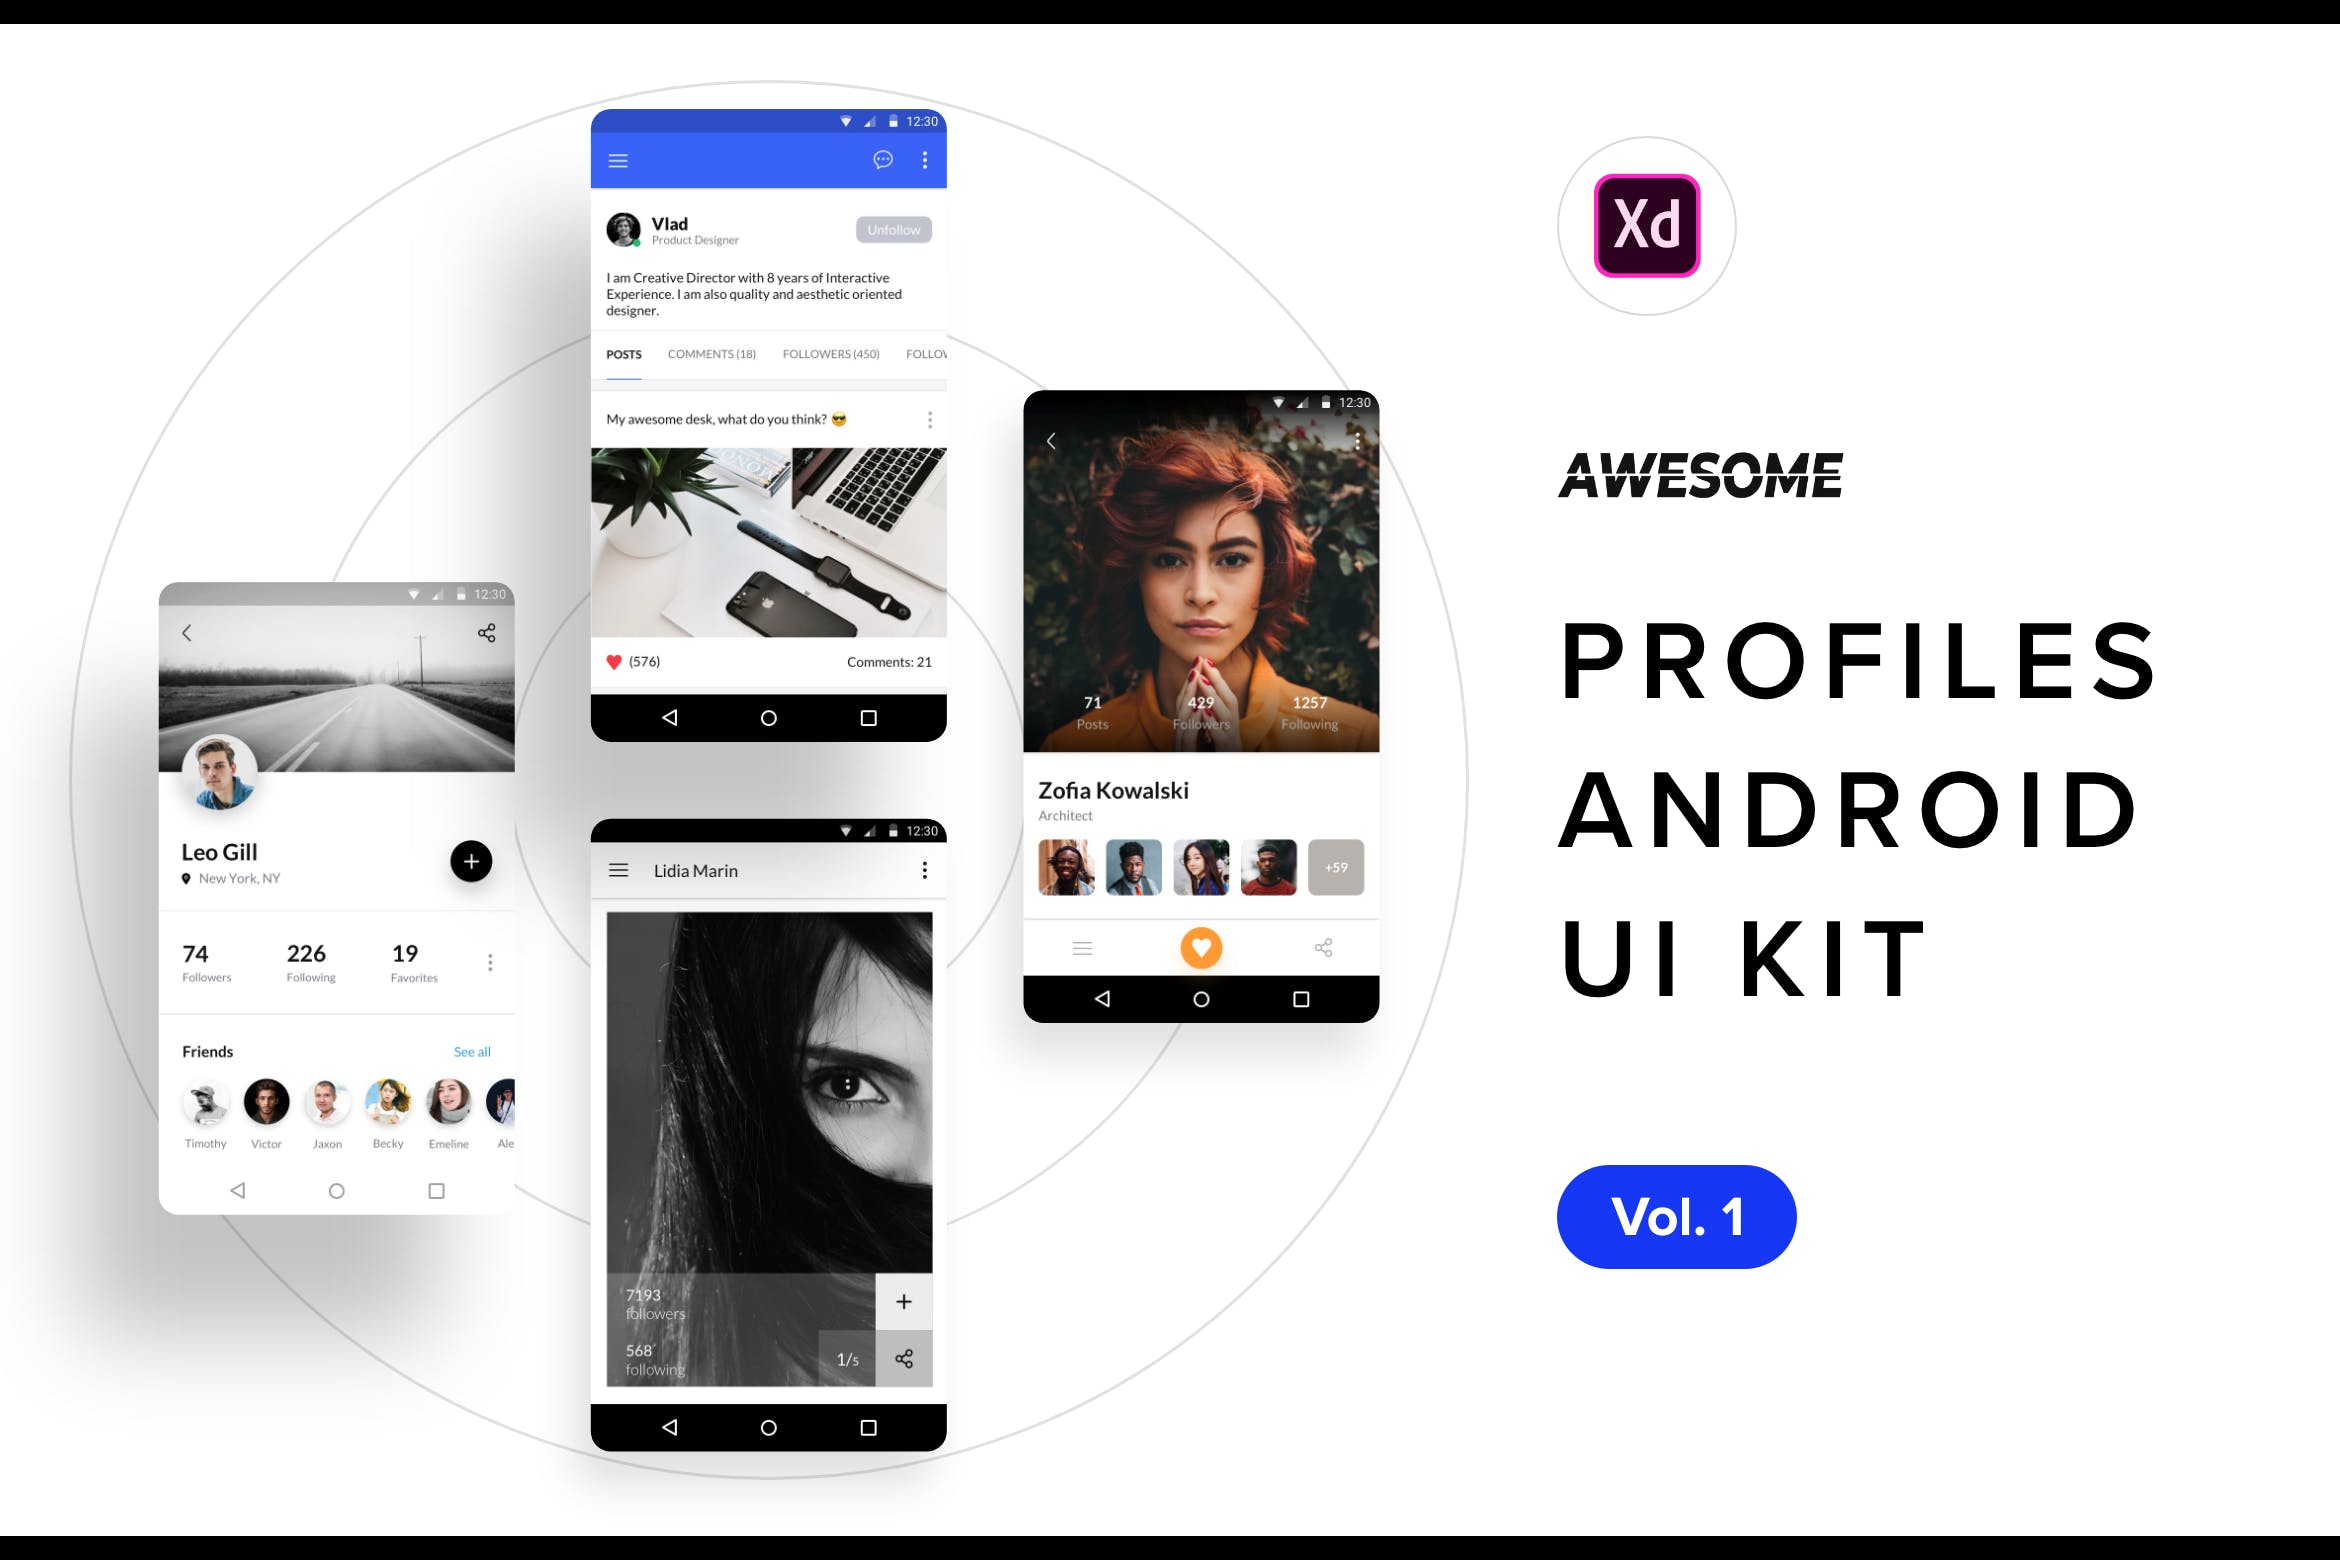 安卓平台社交APP应用用户界面设计XD模板v1 Android UI Kit – Profiles Vol. 1 (Adobe XD)插图